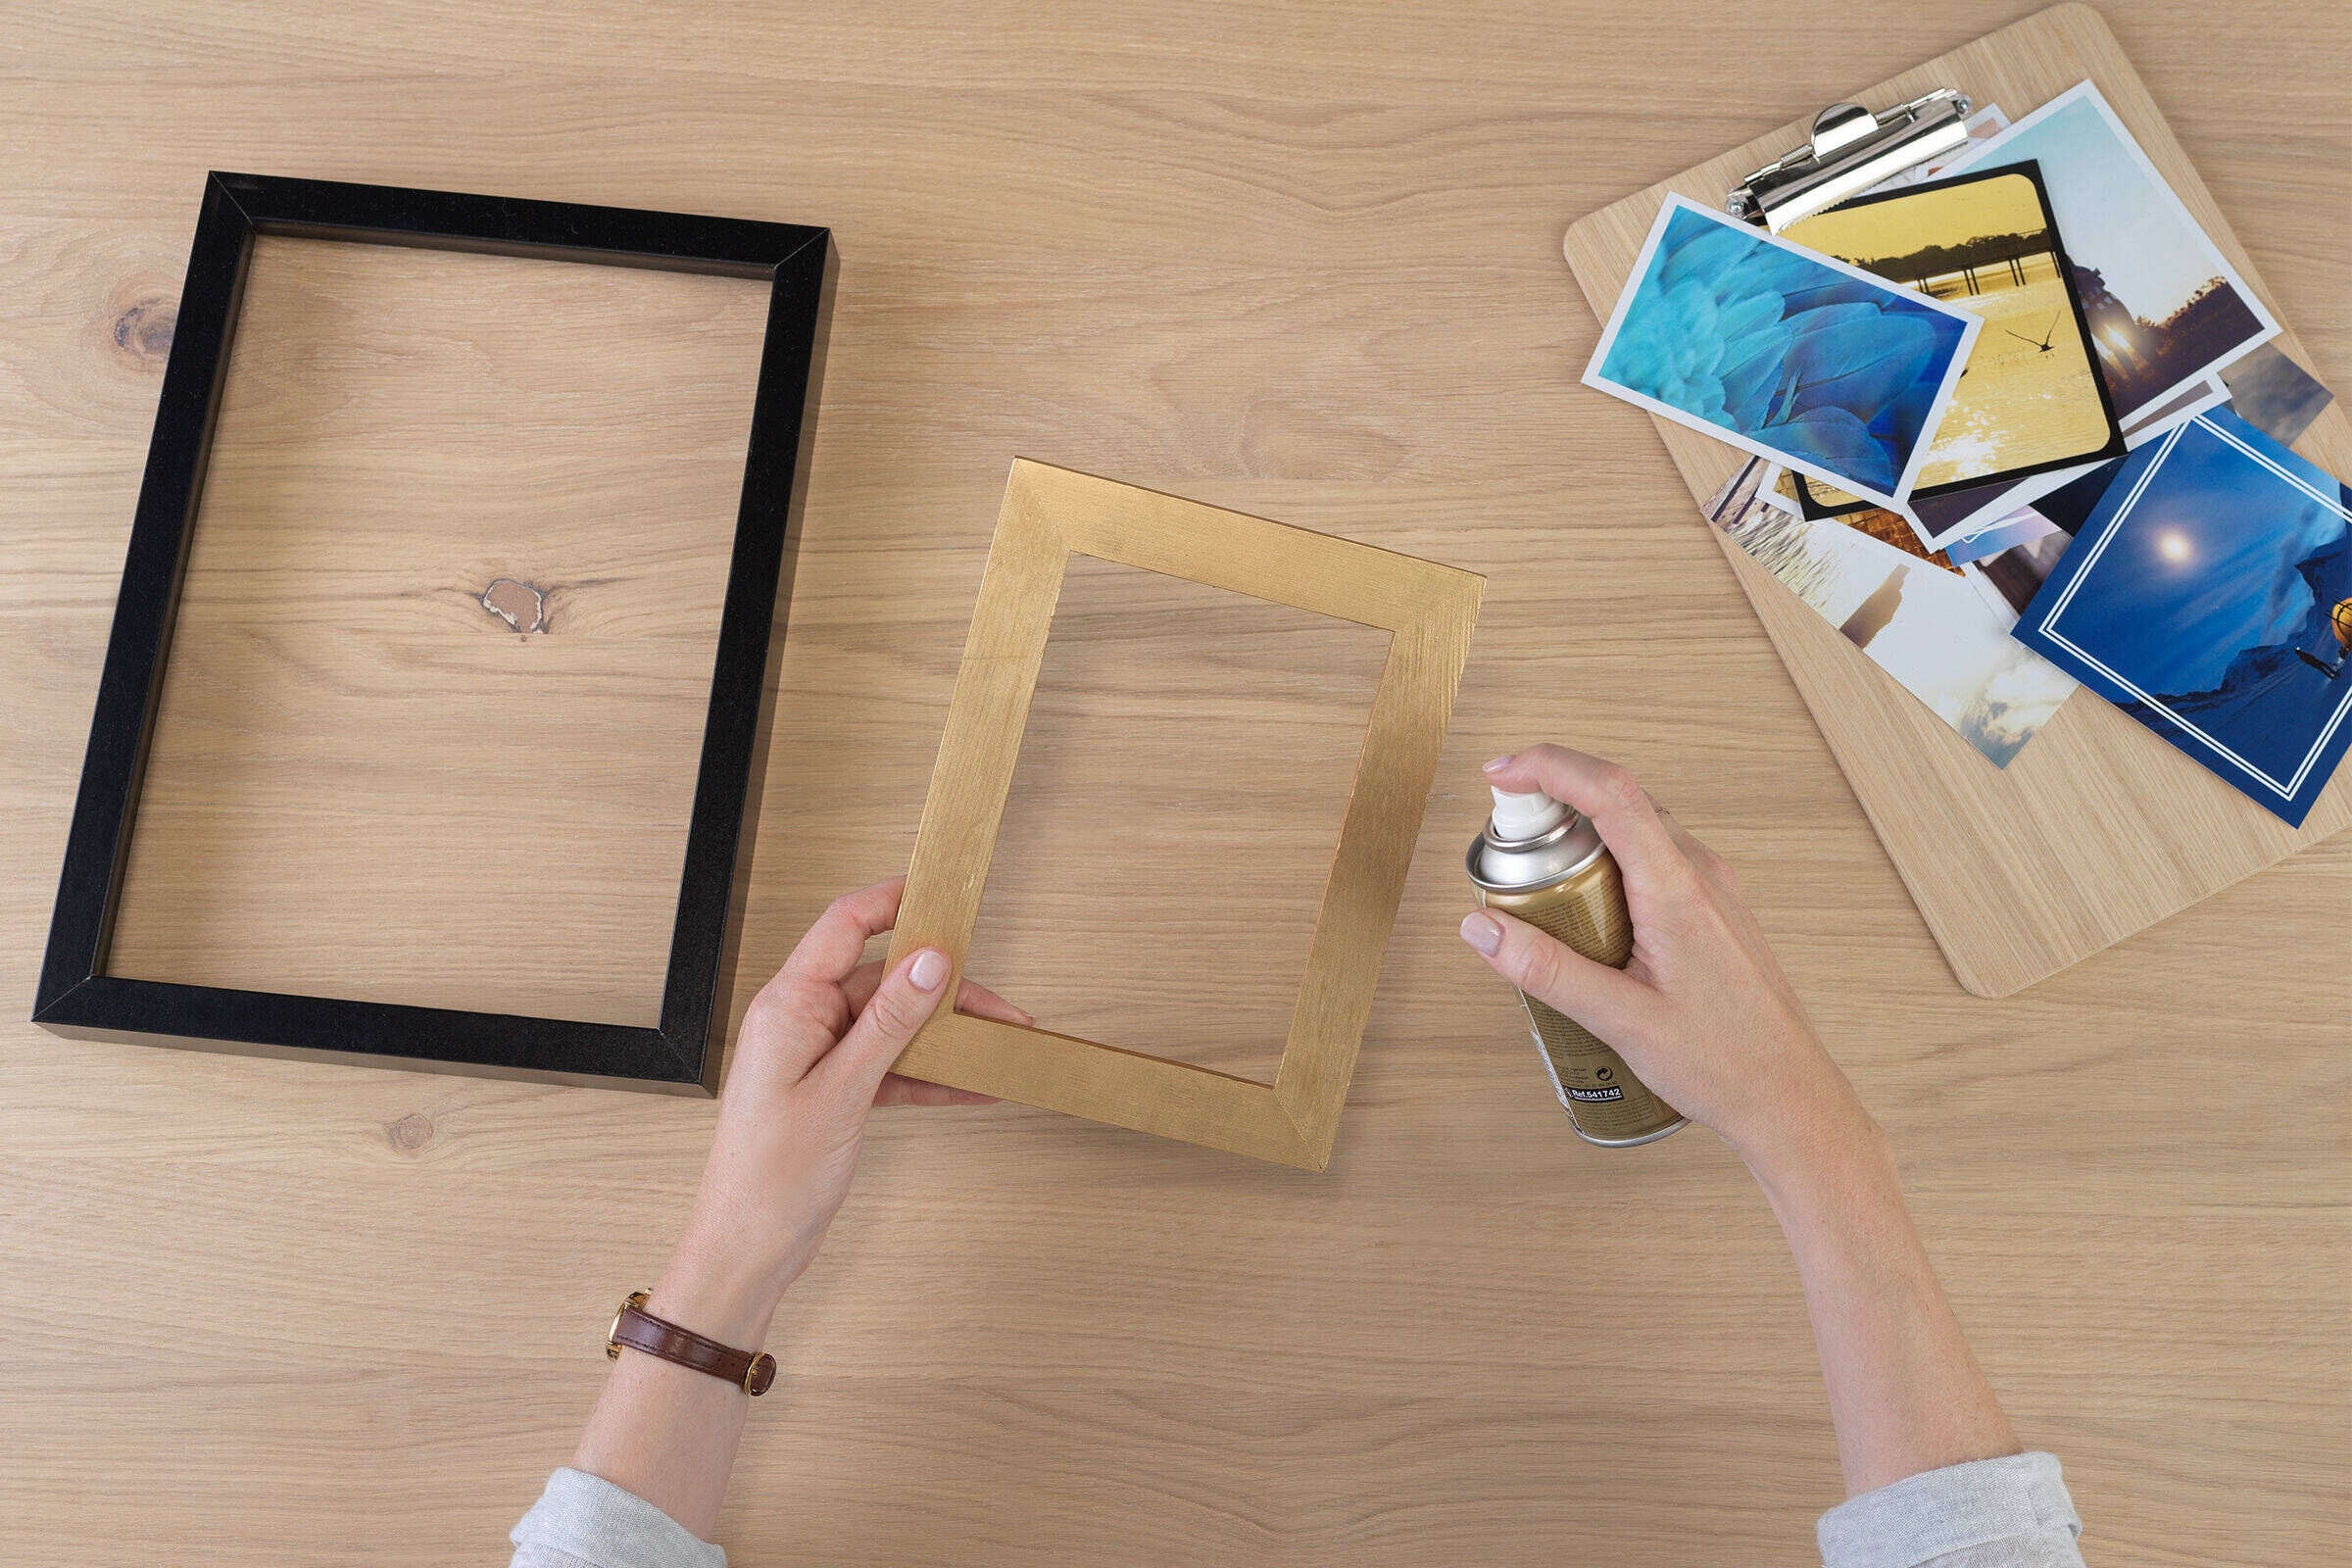 Zwei Hände halten einen Bilderrahmen und besprühen diesen mit Goldspray. Darunter liegen auf einem Tisch ein weiterer Rahmen und verschiedene Fotos.